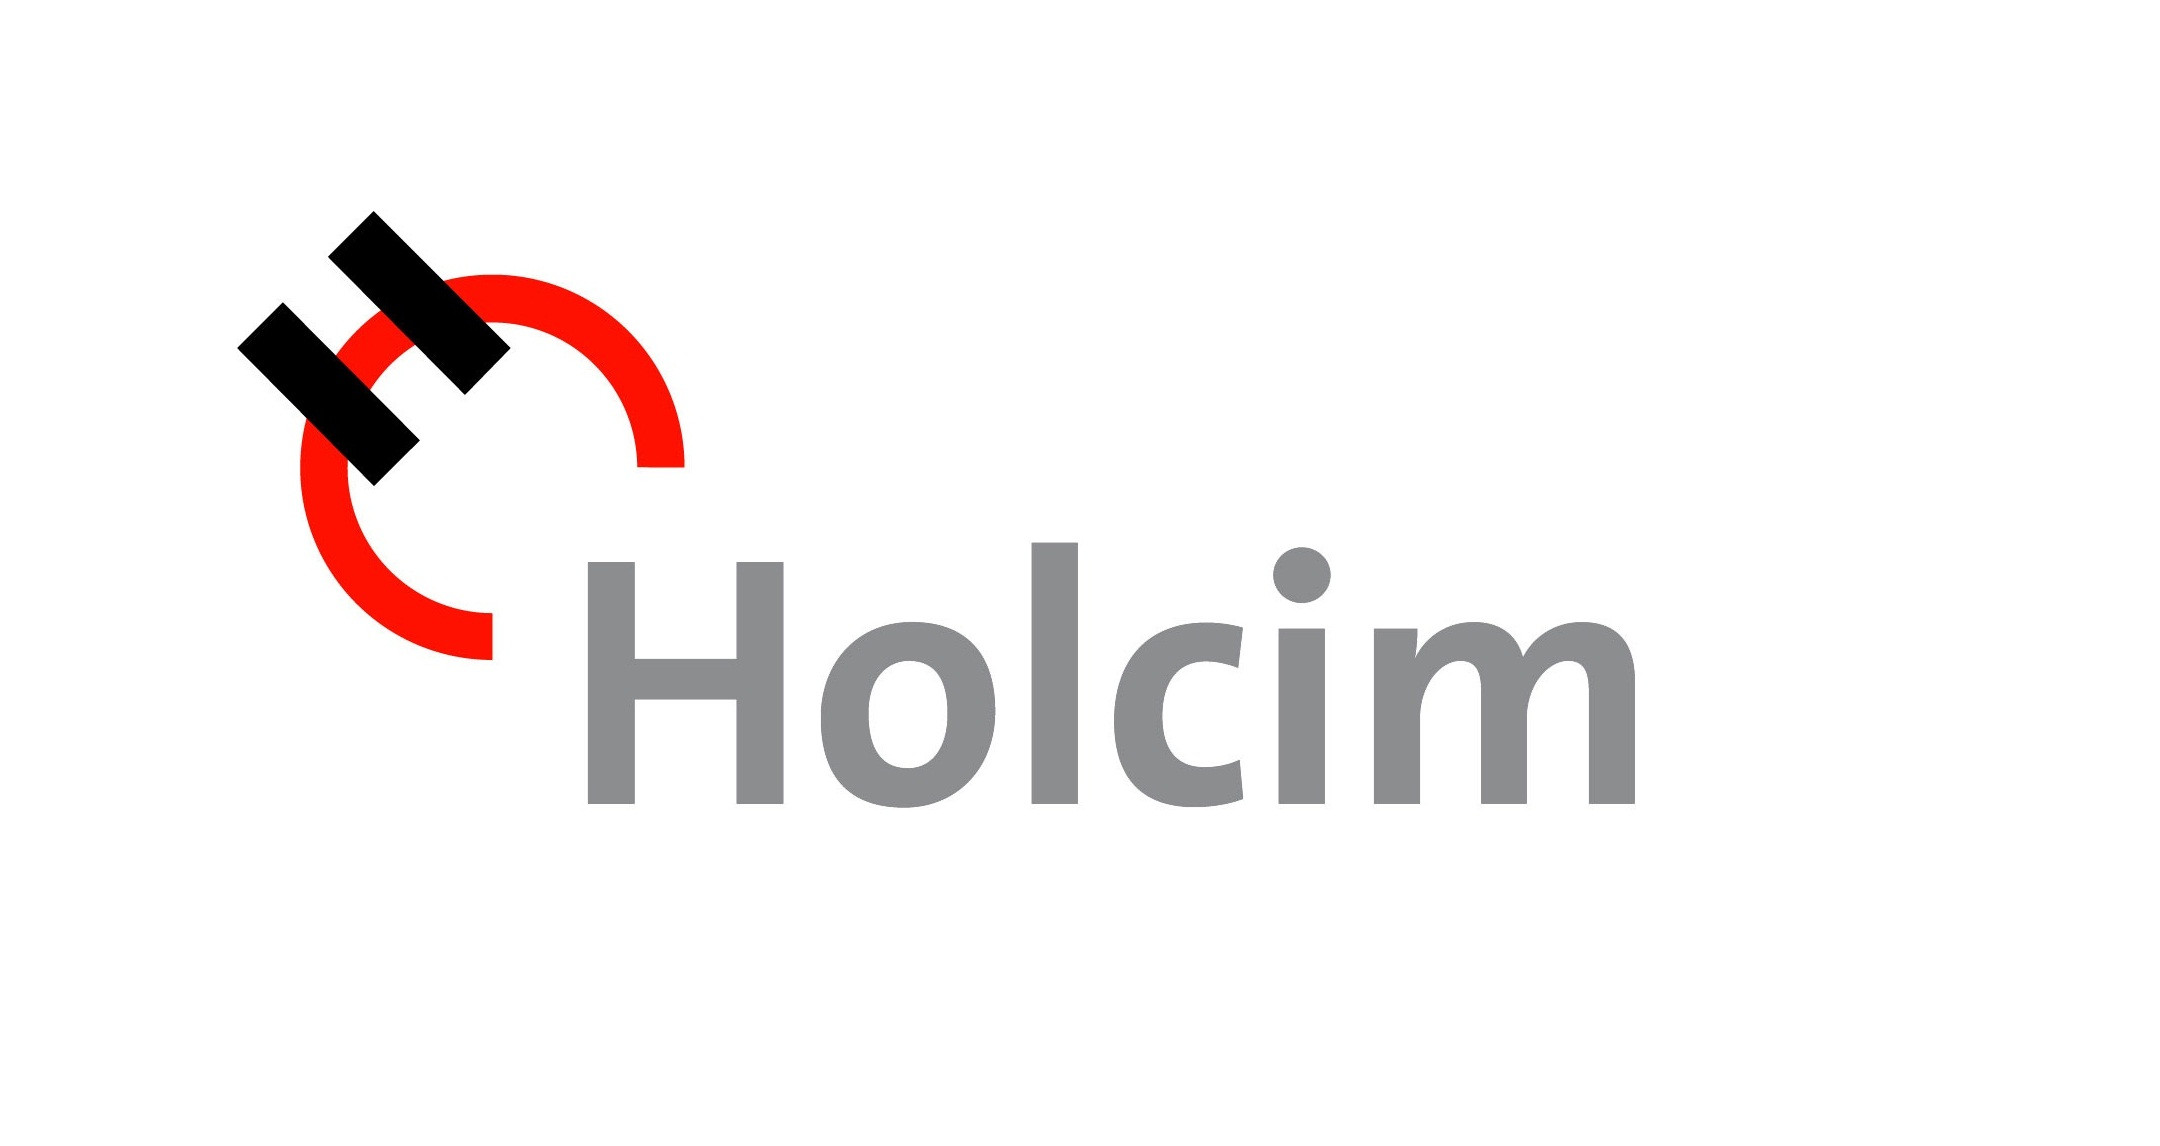 Holcim Brand Logo